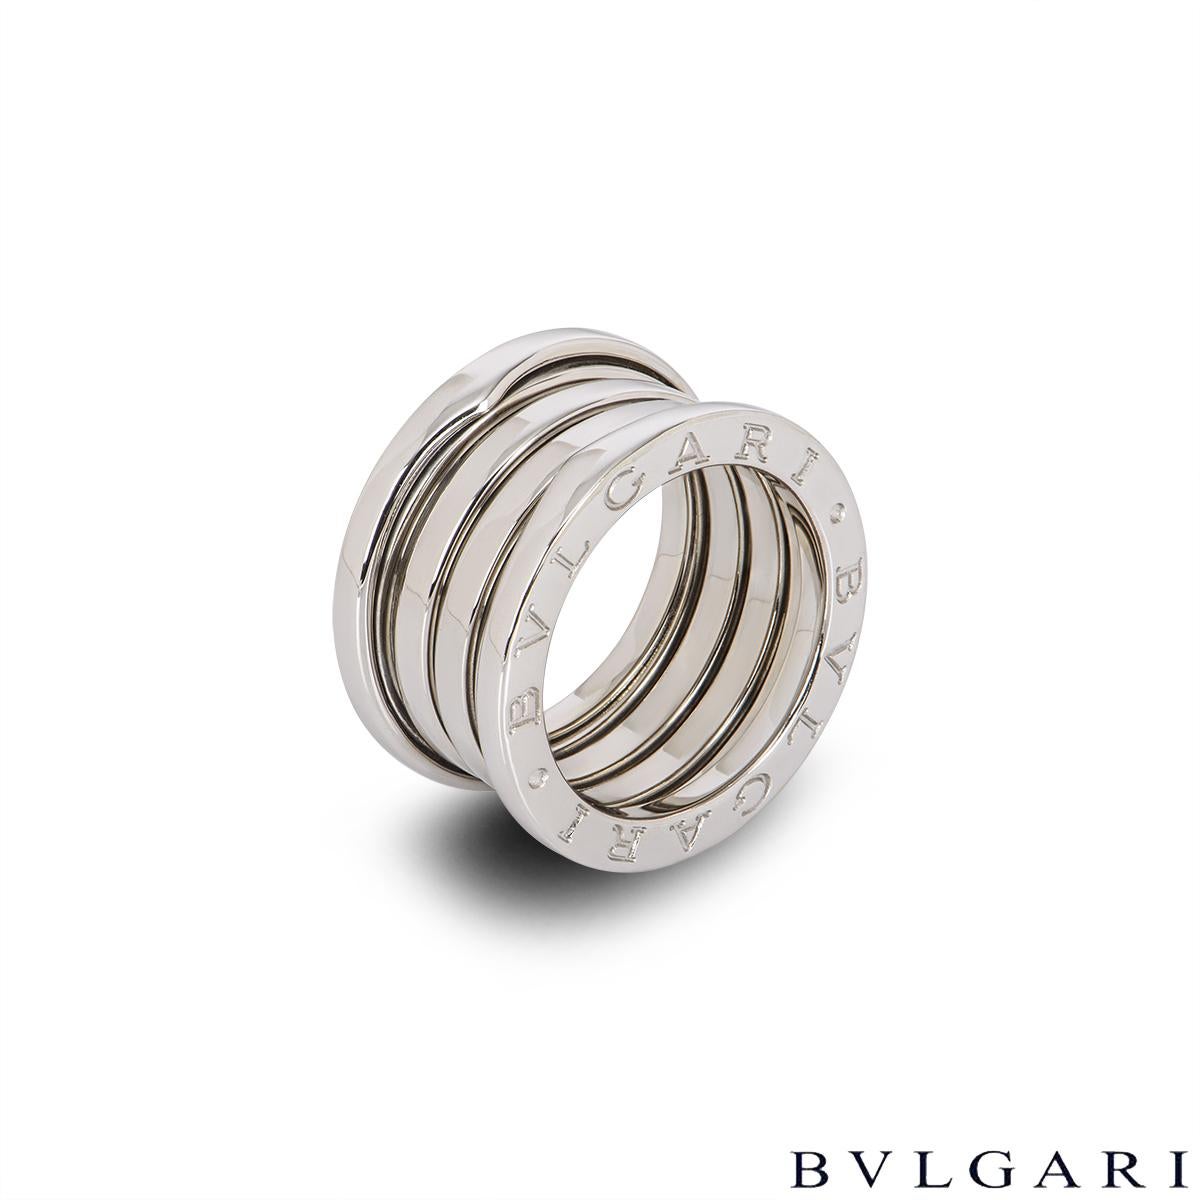 Bague classique en or blanc 18 carats de Bvlgari, de la collection B.Zero1. Comprenant 3 bandes au design en spirale avec le logo iconique 'BVLGARI BVLGARI' gravé sur le pourtour extérieur. Cette bague correspond à la taille UK M - EU 52 et pèse